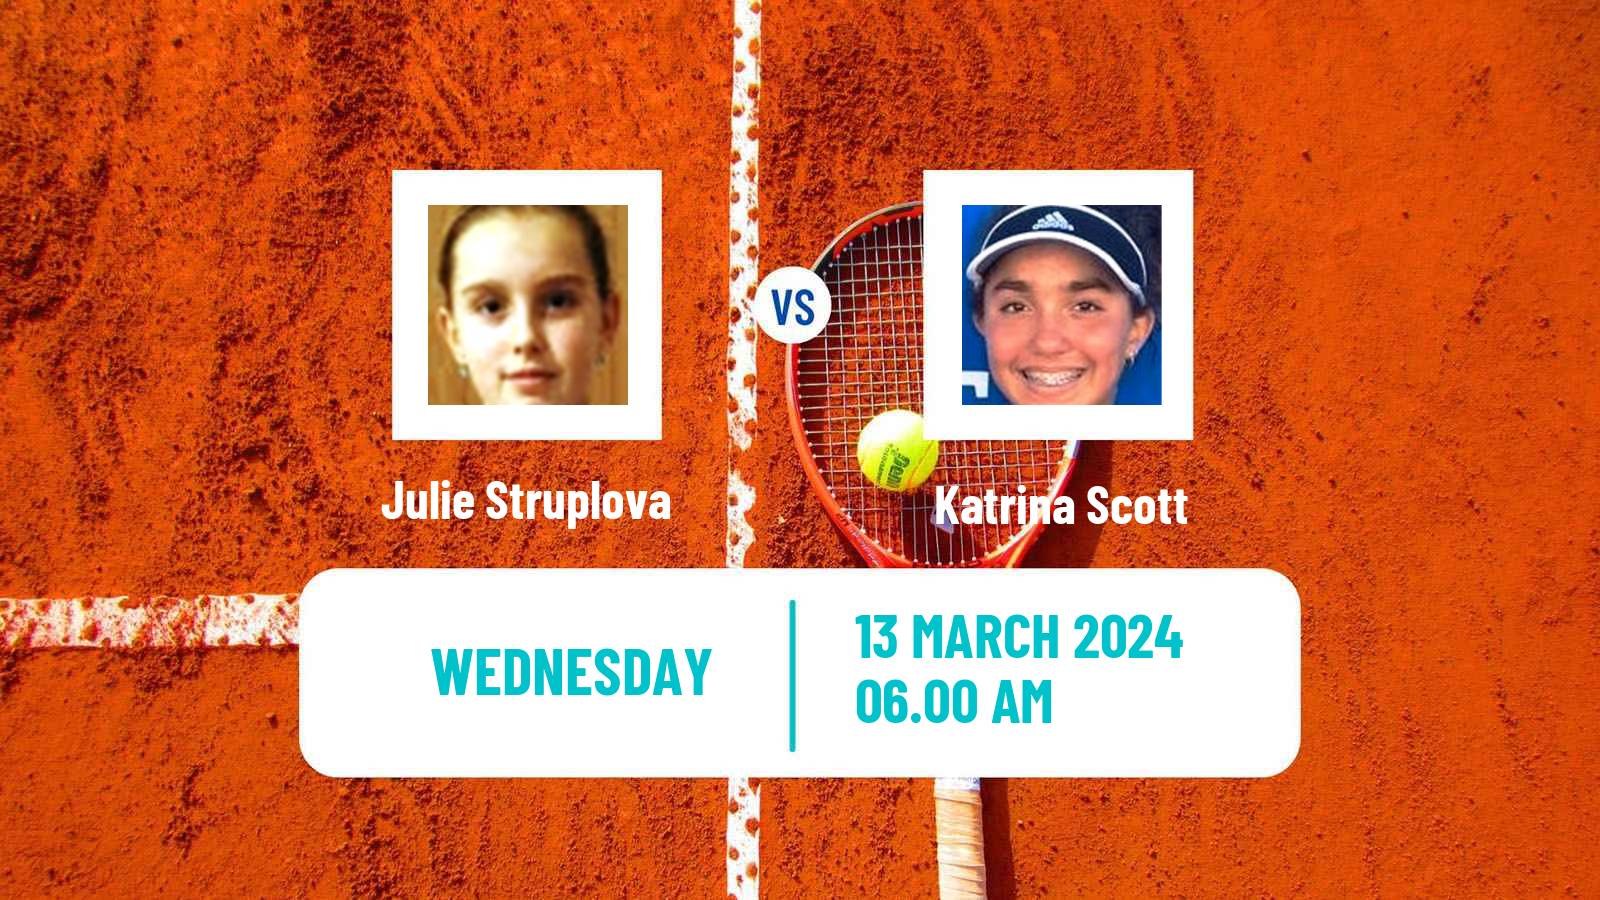 Tennis ITF W35 Solarino 2 Women Julie Struplova - Katrina Scott